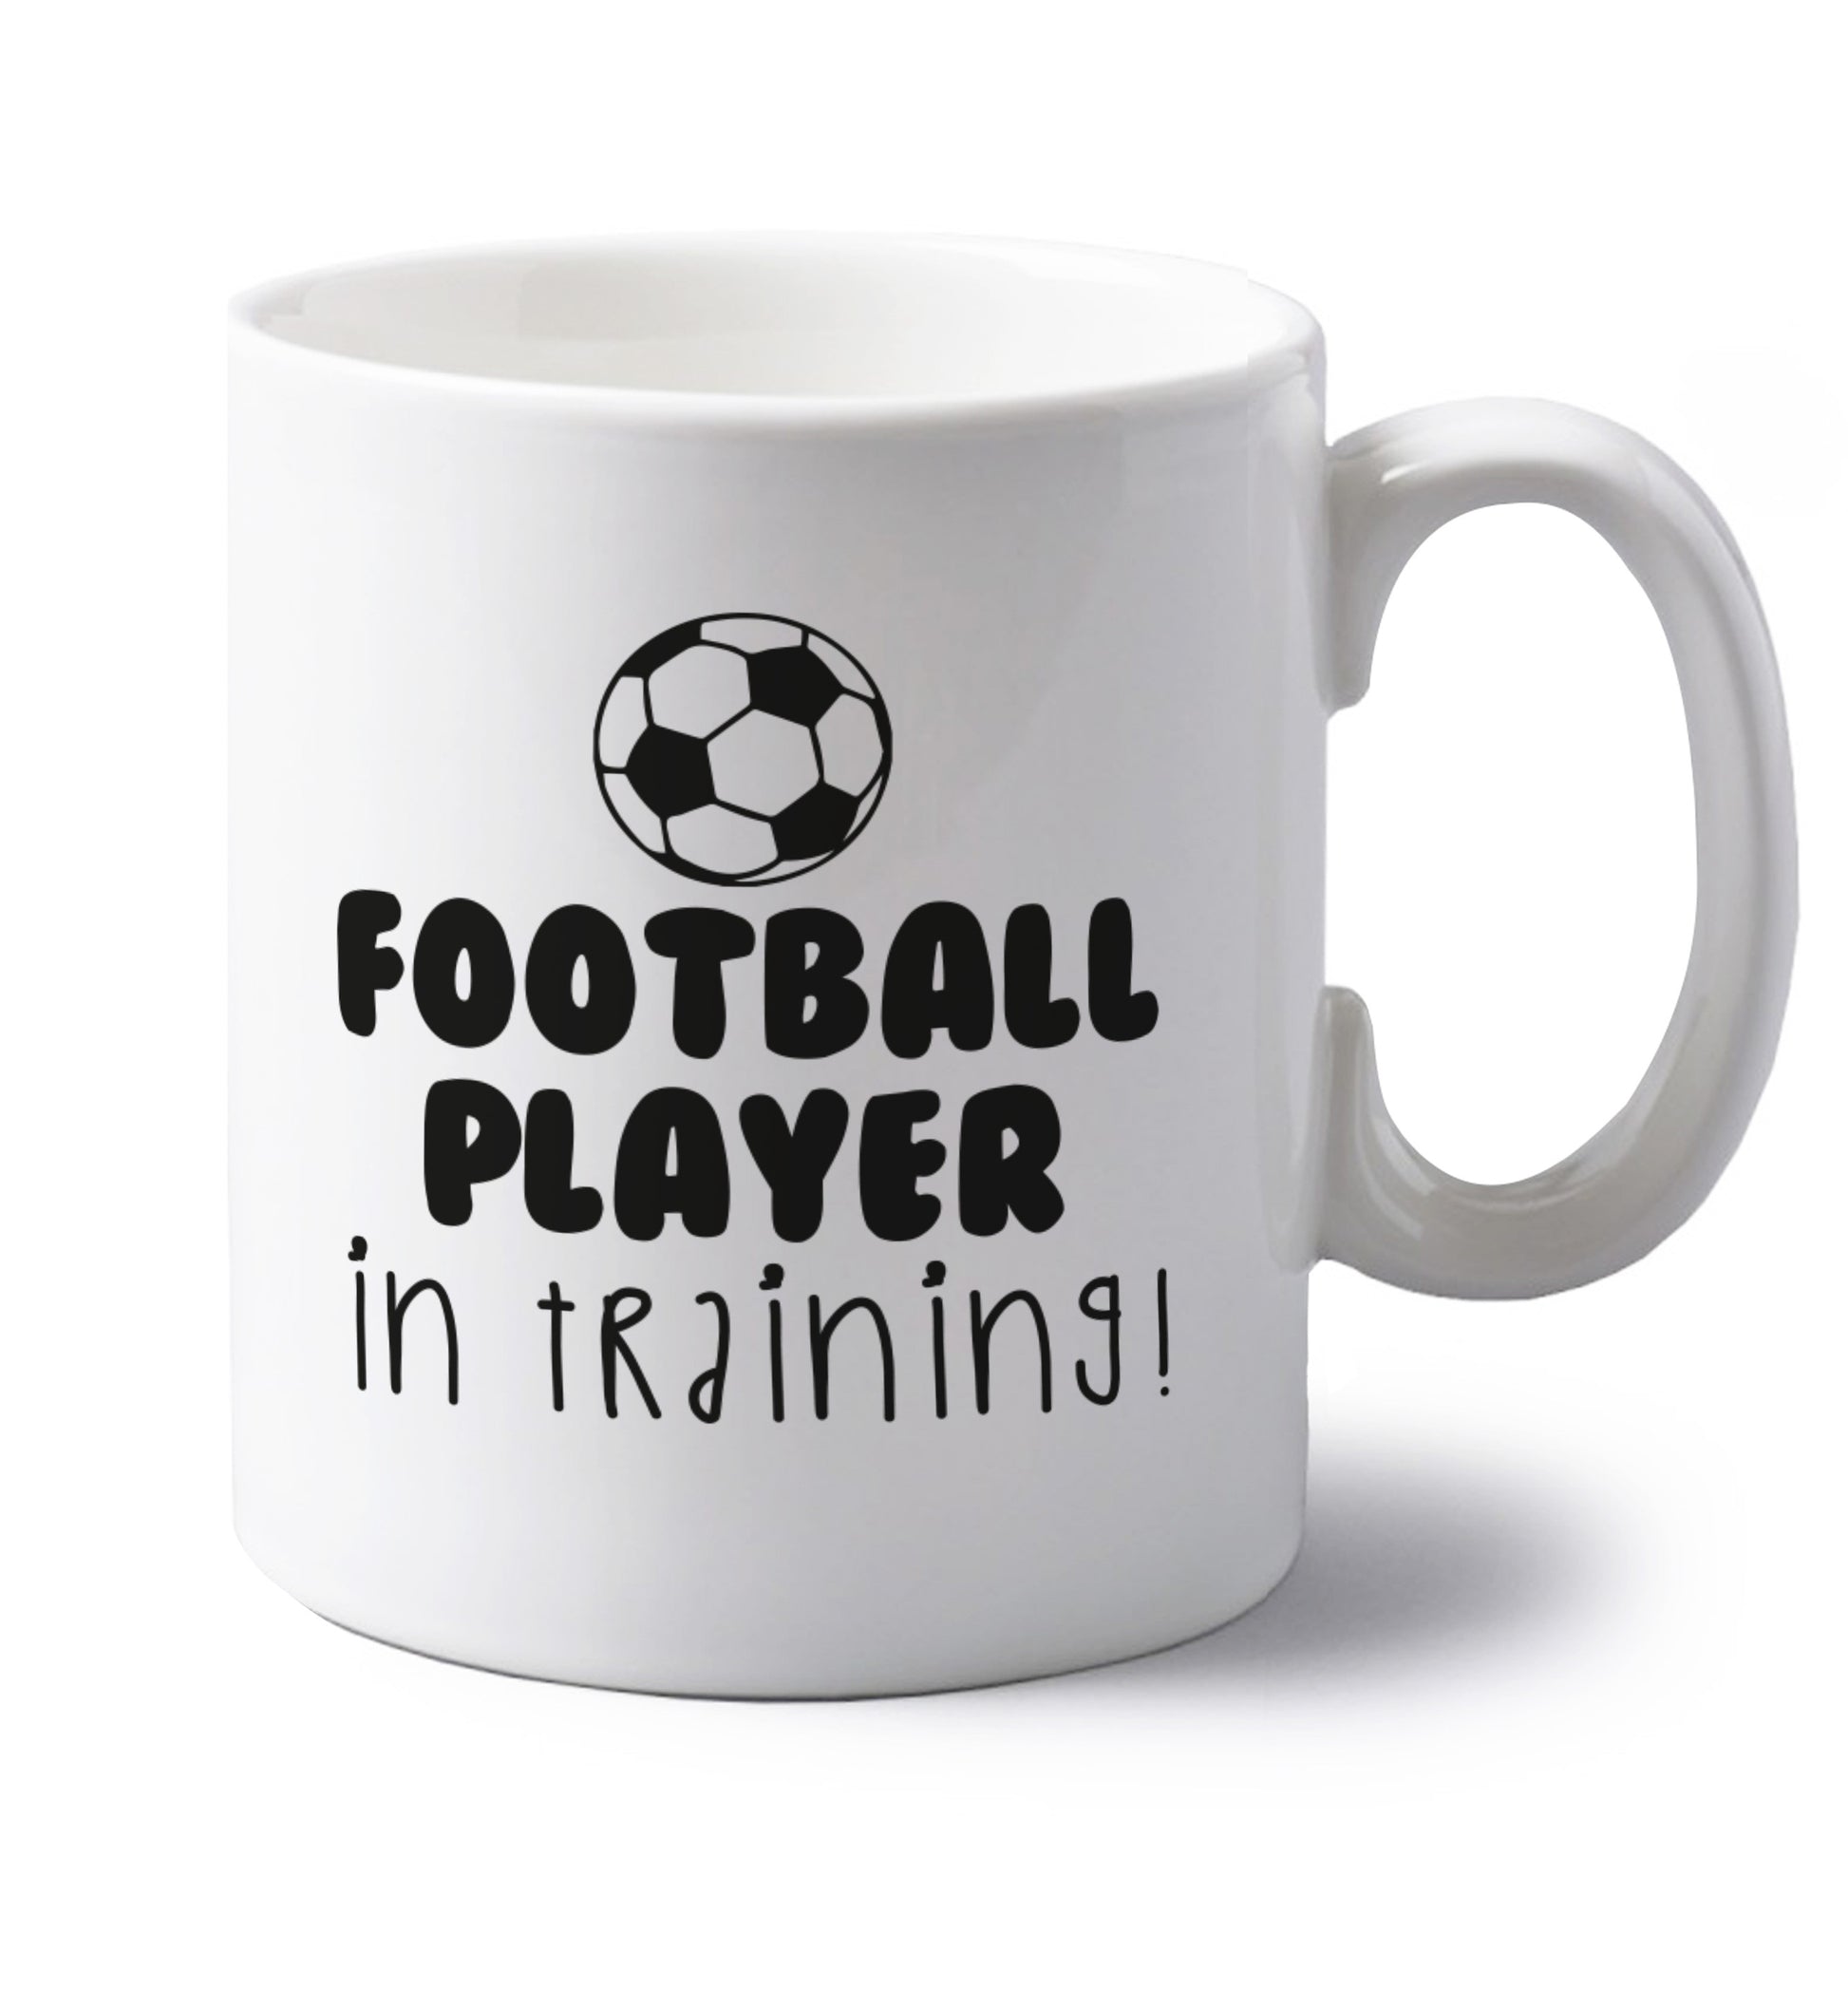 Football player in training left handed white ceramic mug 